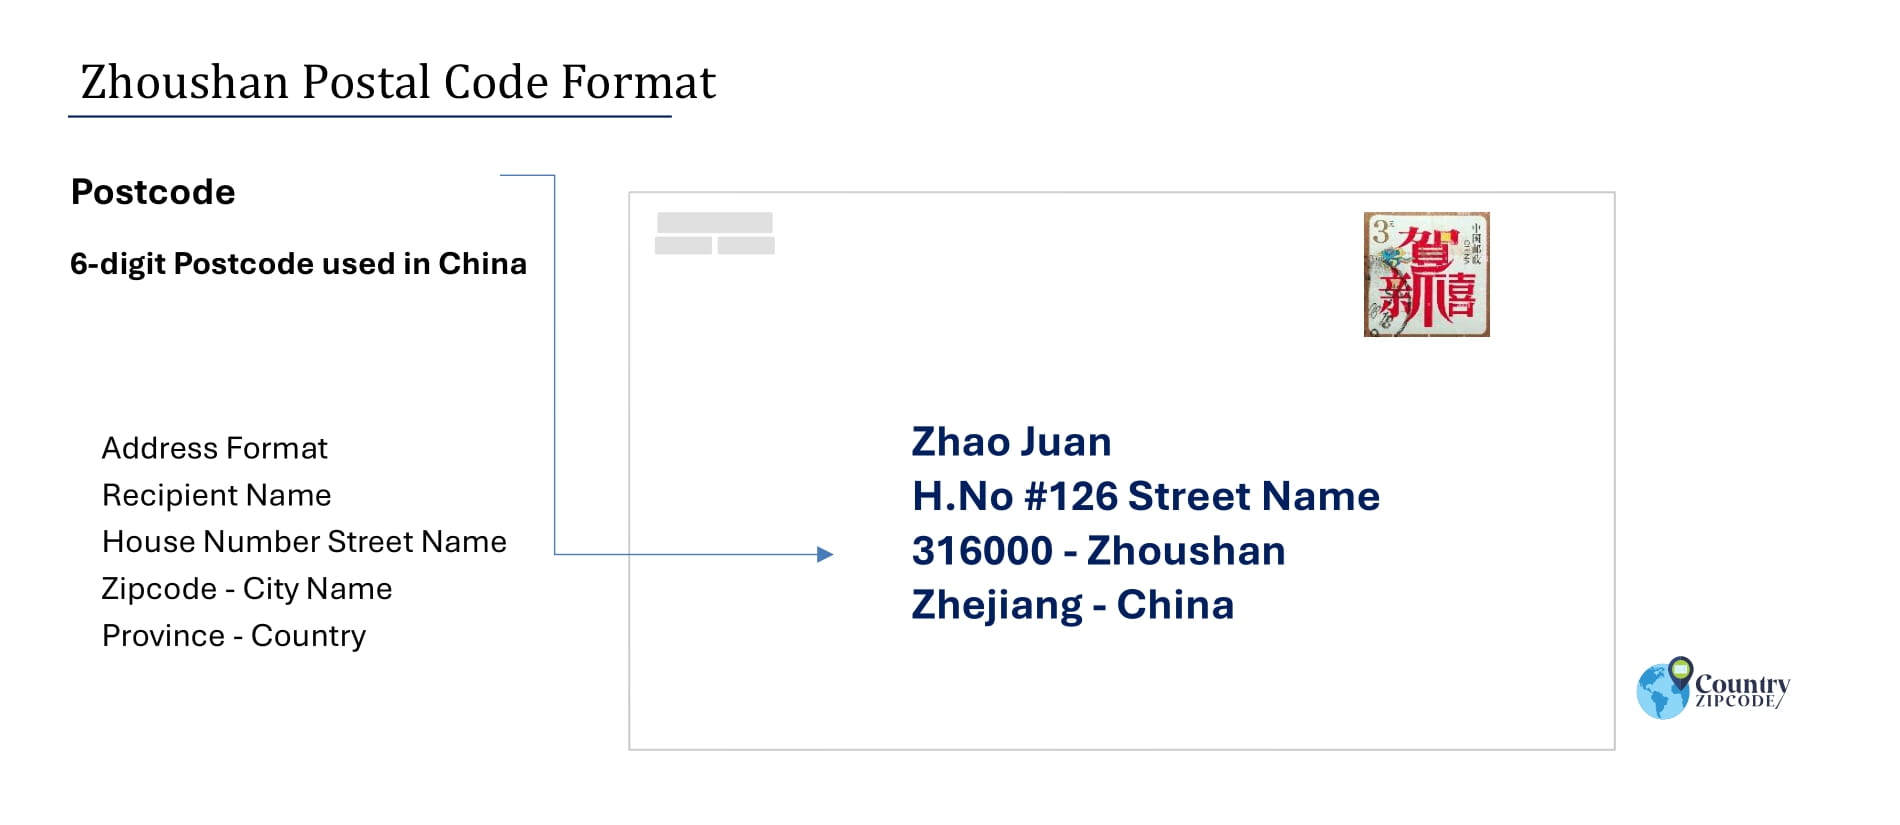 Example of ZhoushanChinaPostalcodeandAddressformat